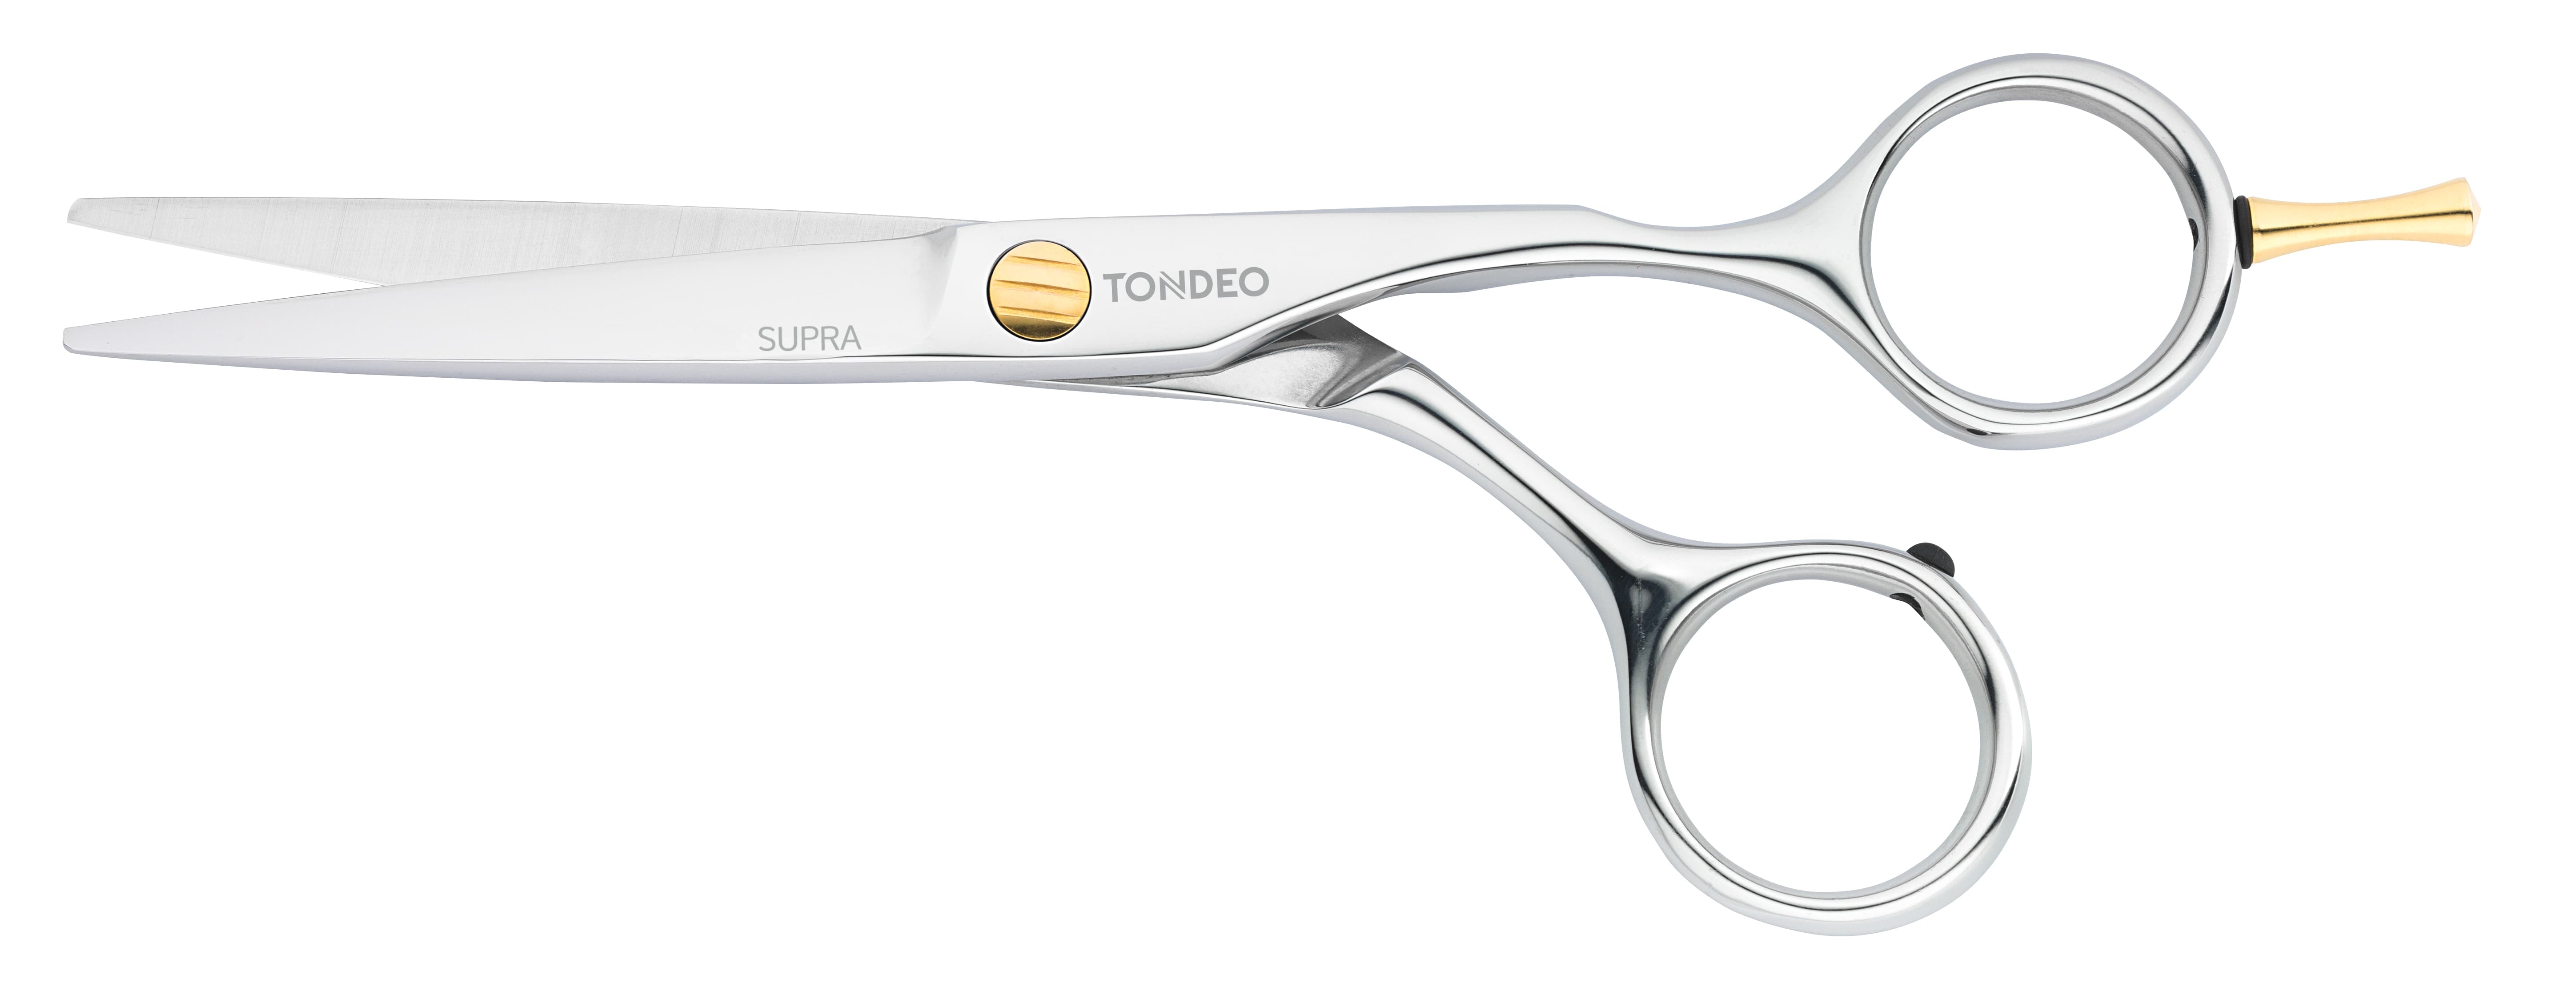 hair-scissors-tondeo-supra-classic-online-store